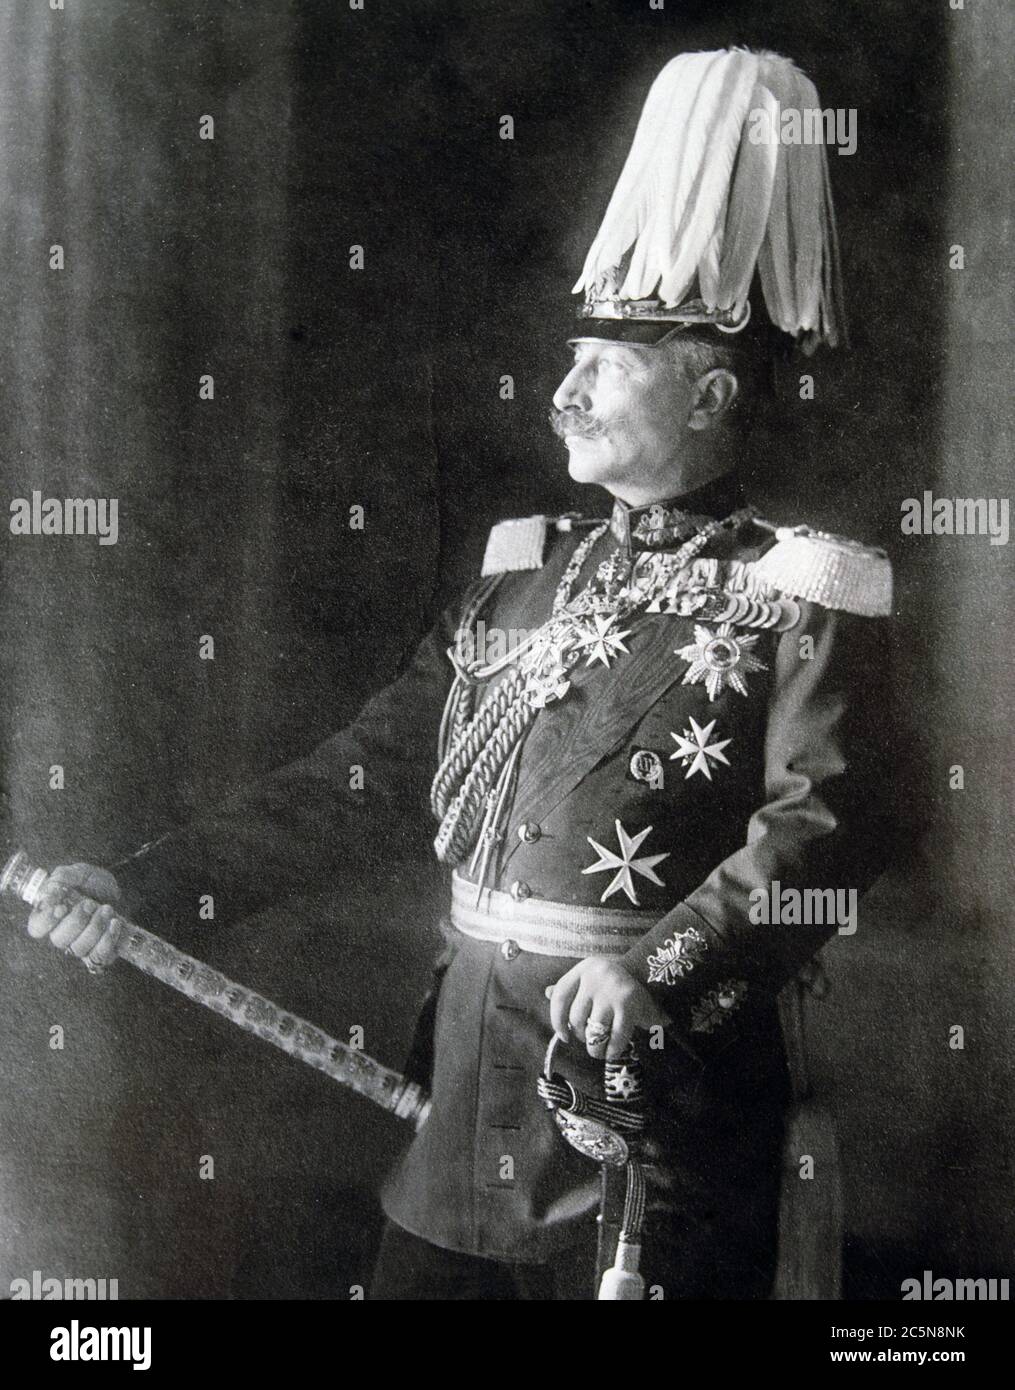 GUILLERMO II DE ALEMANIA. EMPERADOR DE ALEMANIA. 1859-1941. REPRODUCCION FOTO. Foto de stock